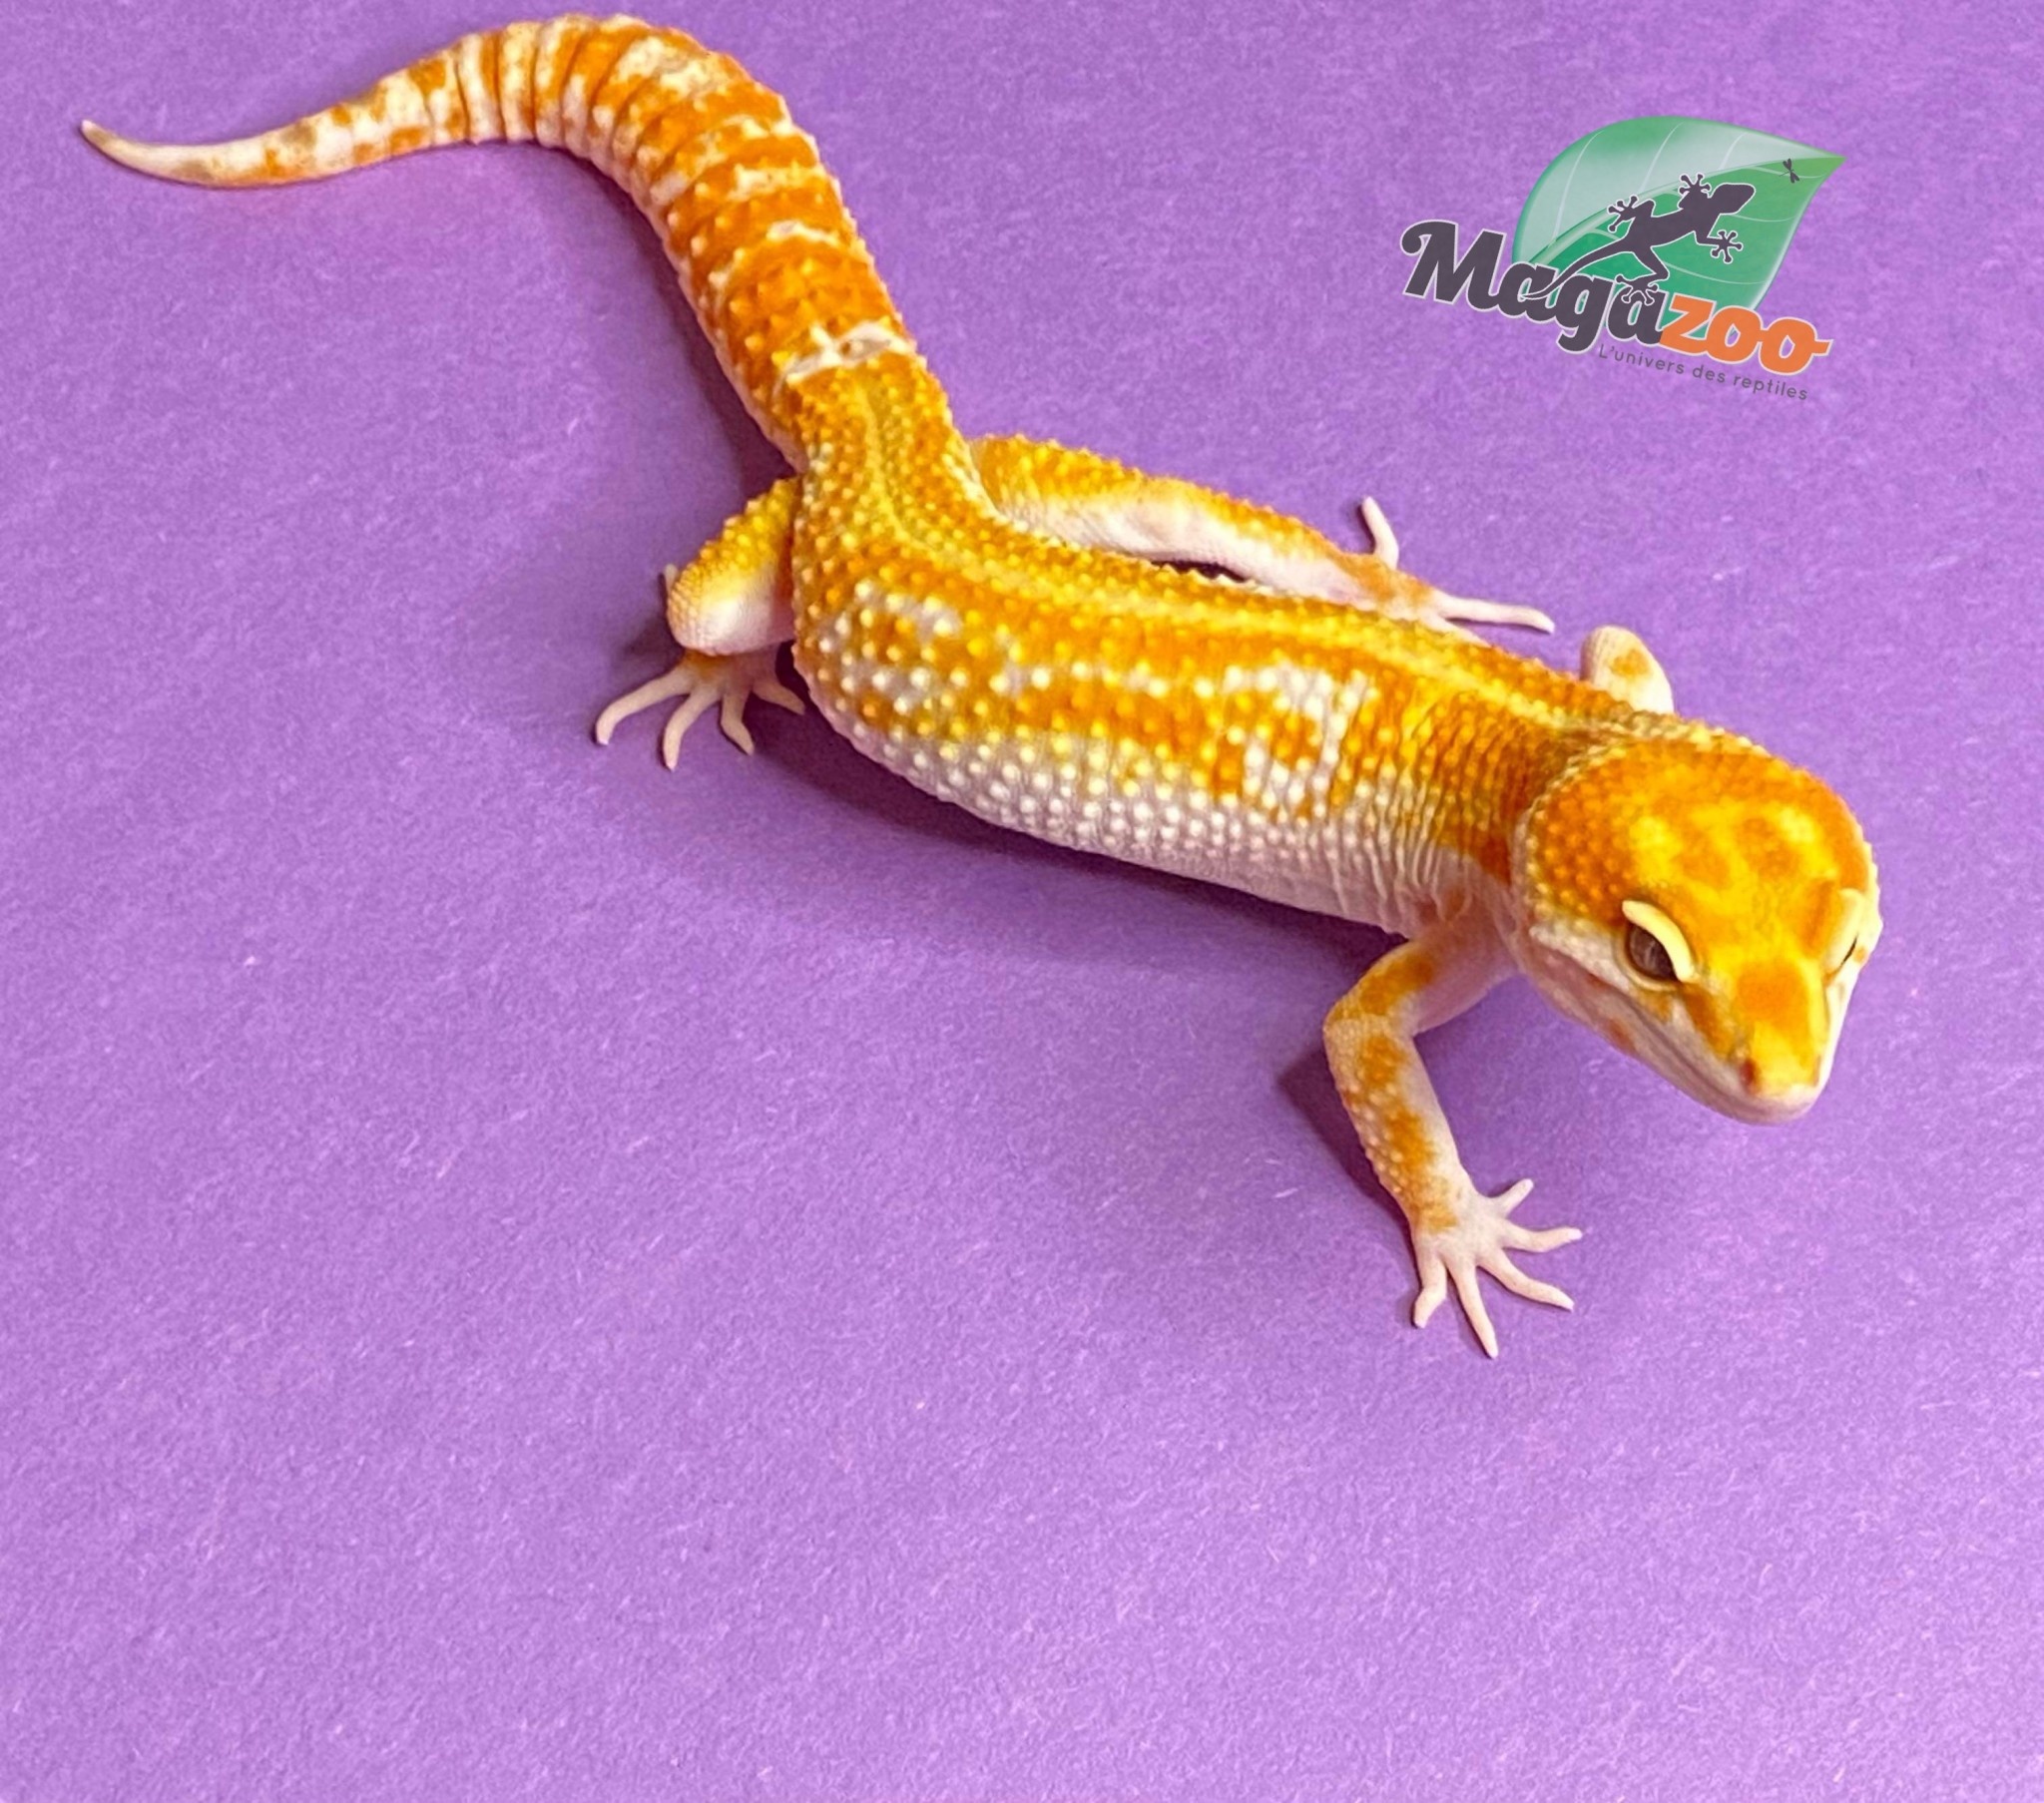 Magazoo Gecko léopard Red Diamond Mâle 26/5/23